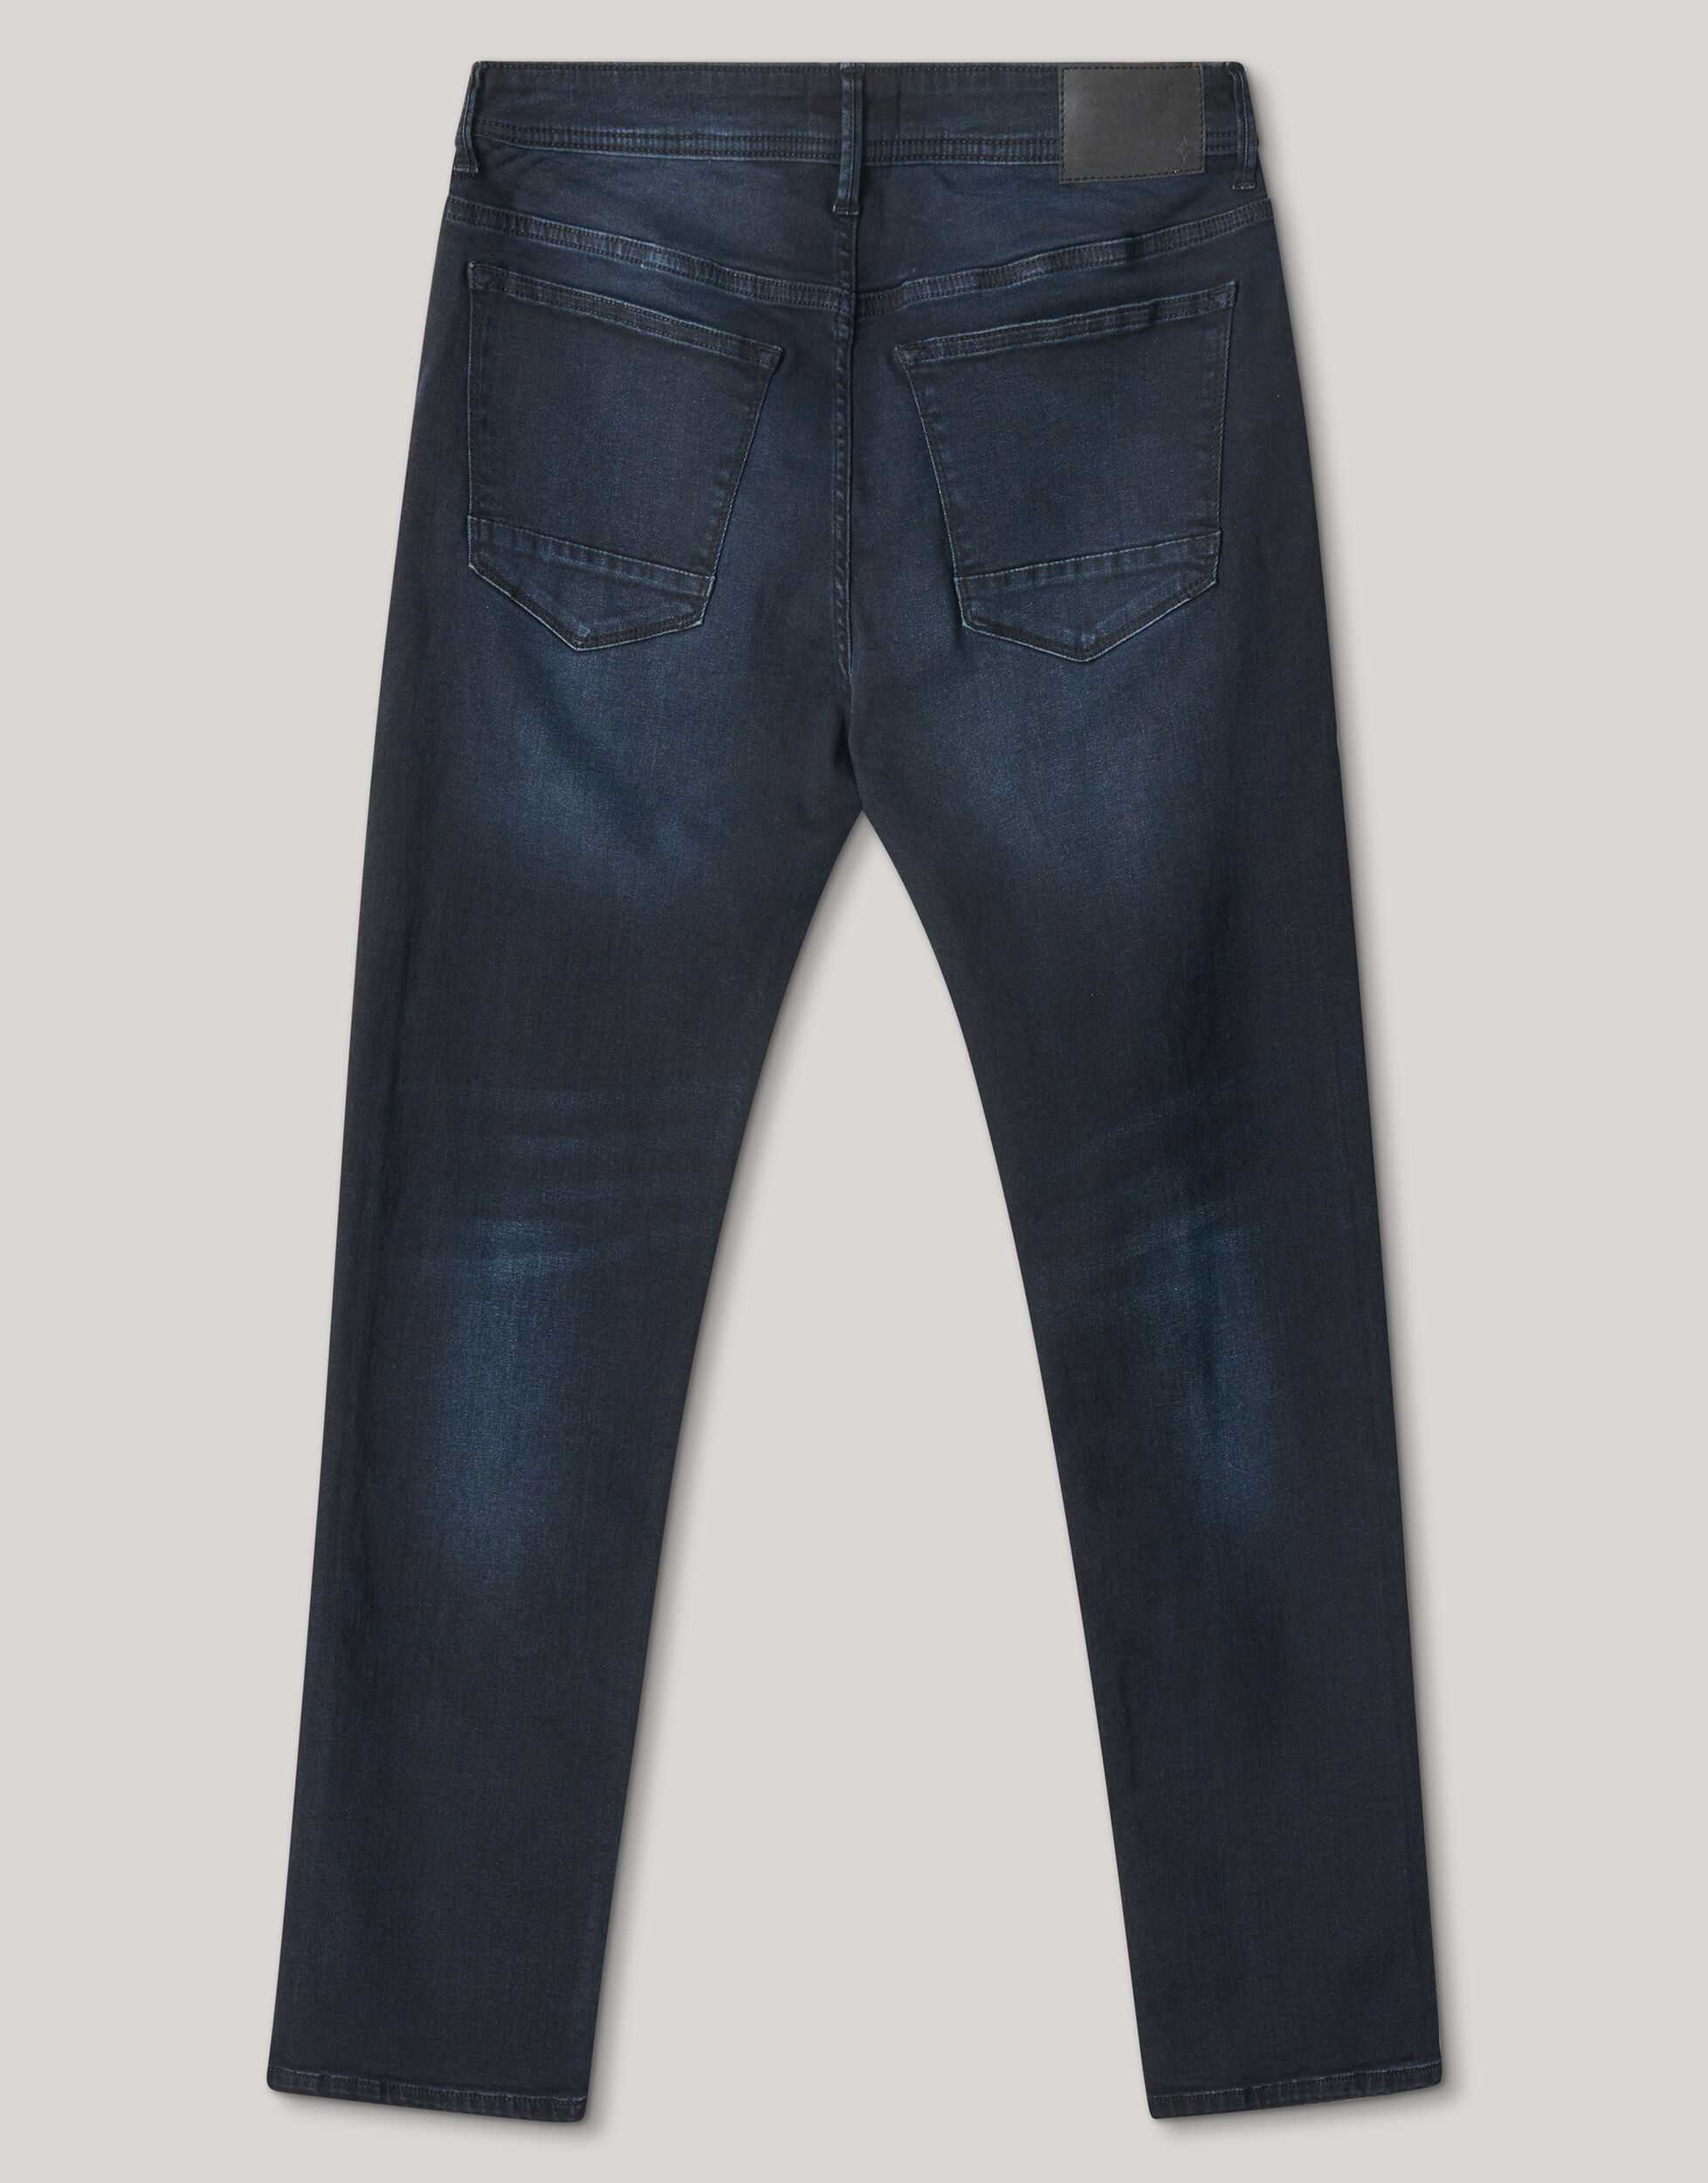 Straight Fit Jeans Blauw/Zwart L32 Refill